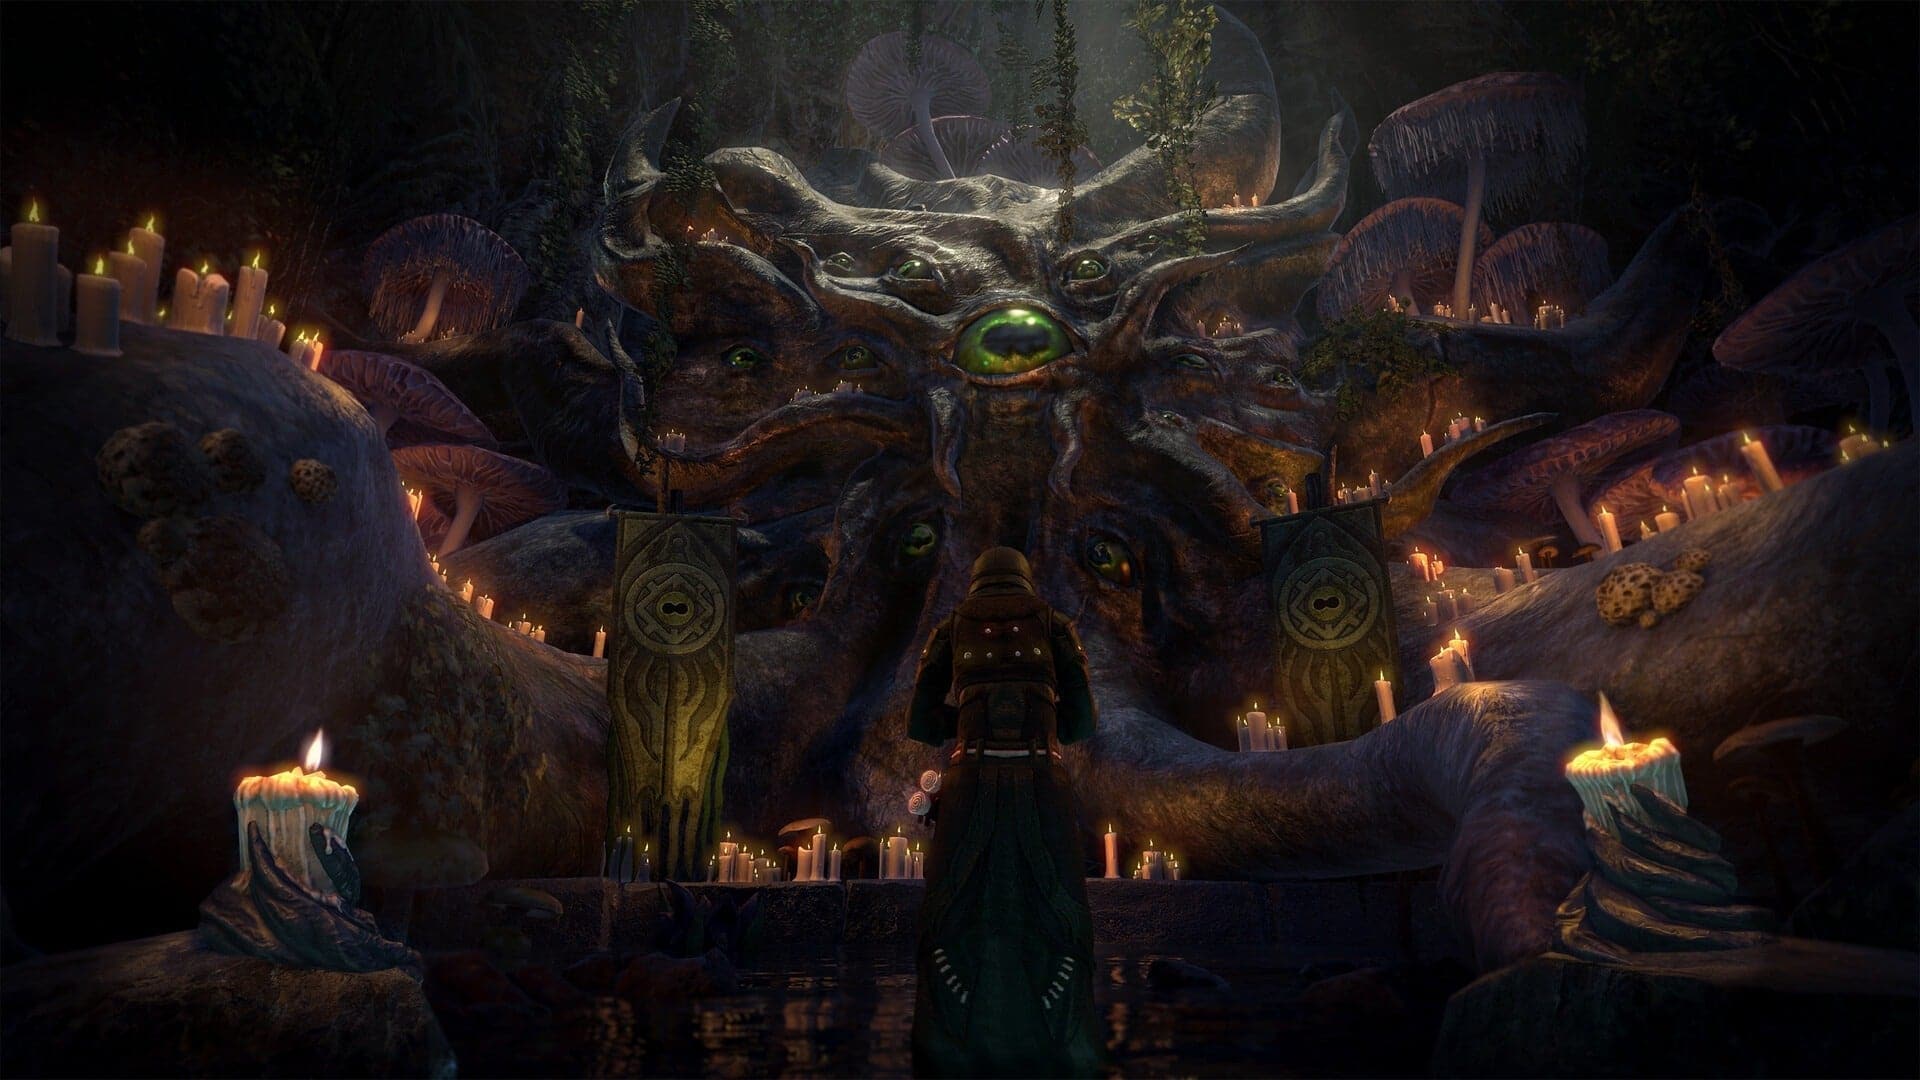 The Elder Scrolls Online: Deluxe Upgrade: Necrom - Xbox